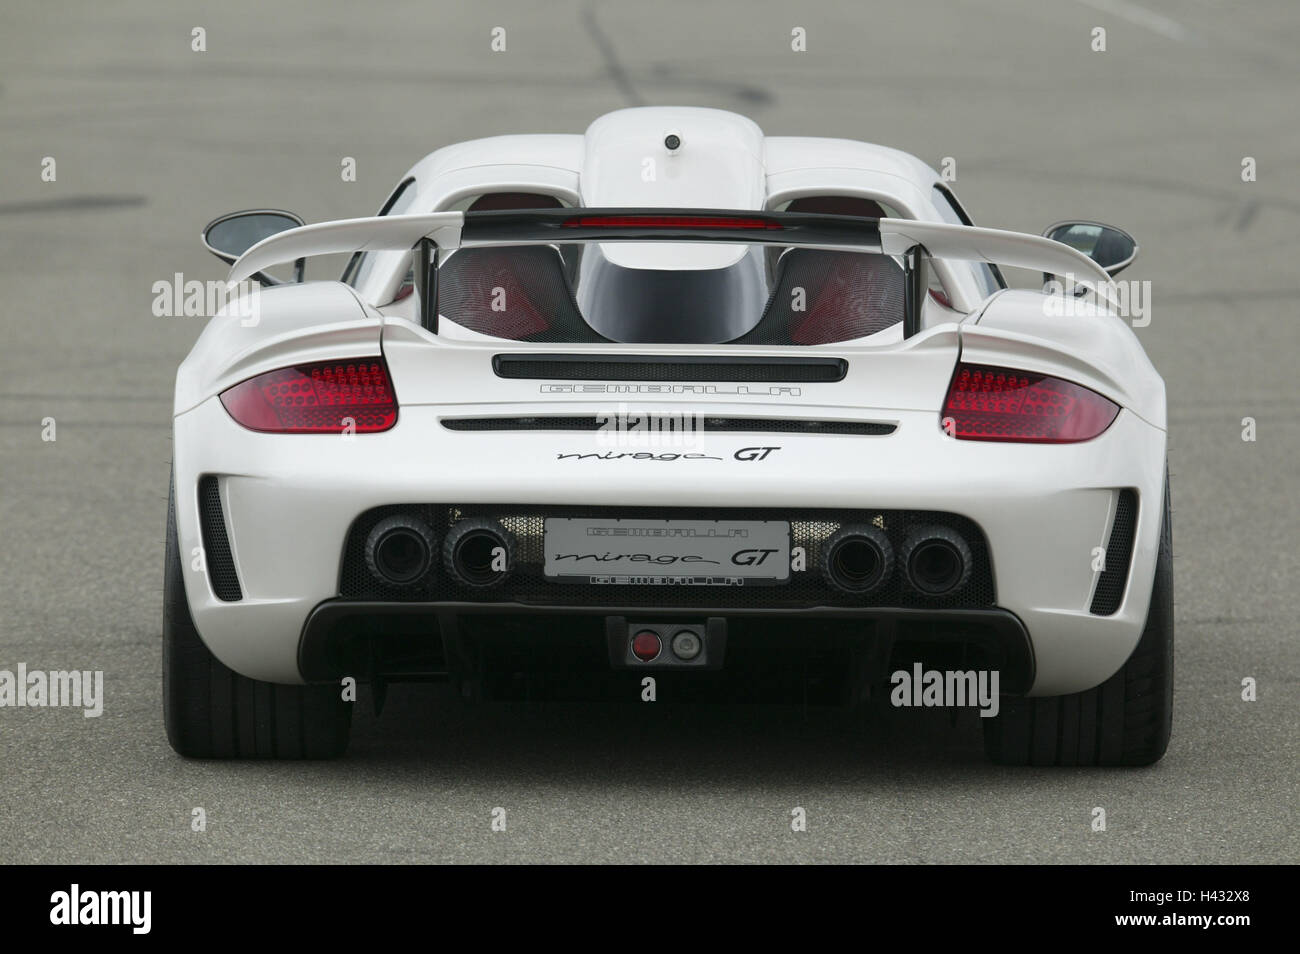 Gemballa Porsche 'Mirage GT', white, rear view Stock Photo